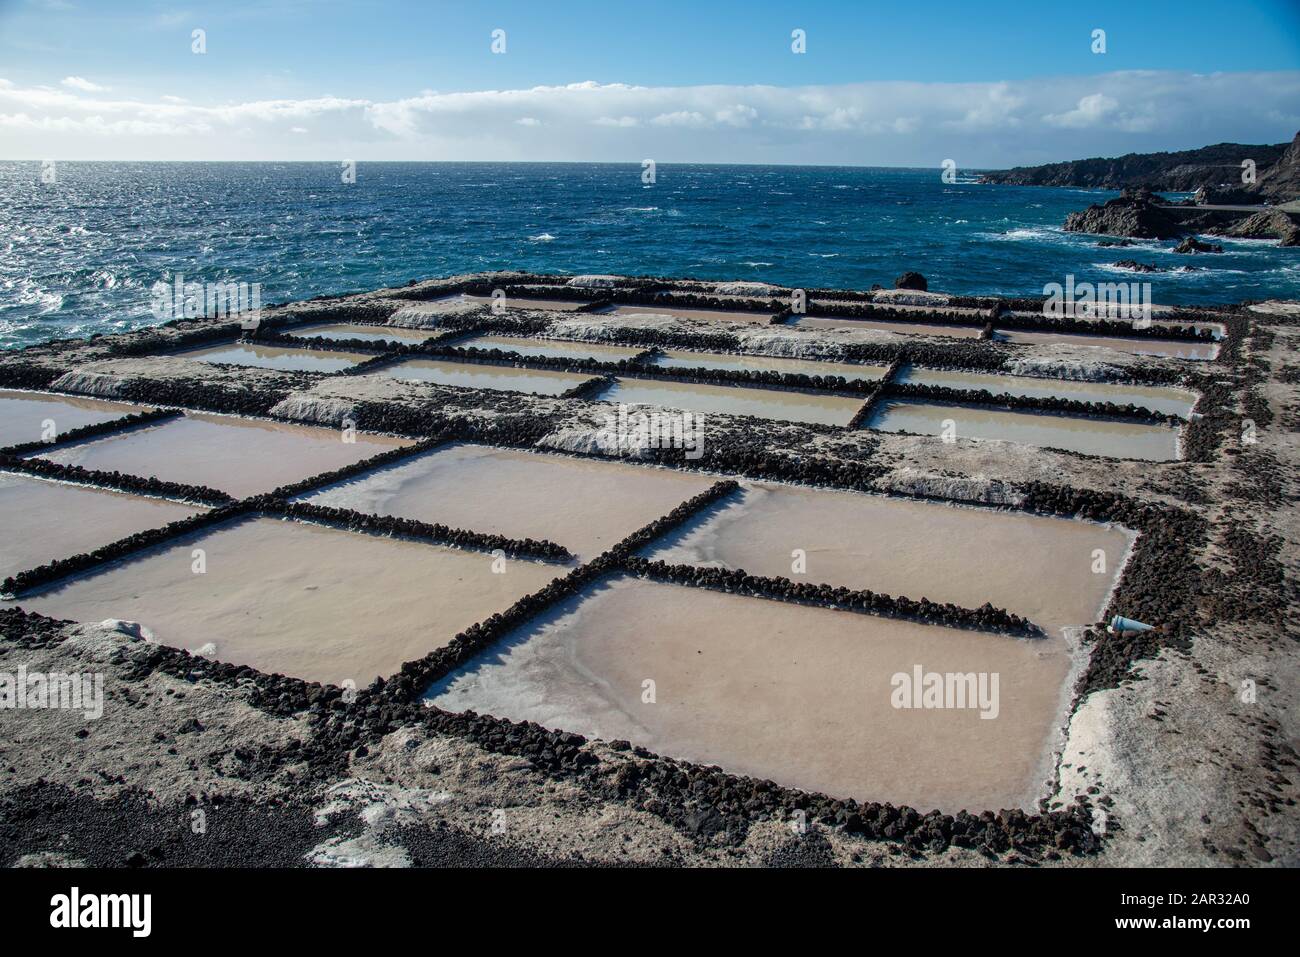 Salinas de Fuencaliente. Saltwinning at Fuencaliente at La Palma, Canary island, Spain Stock Photo